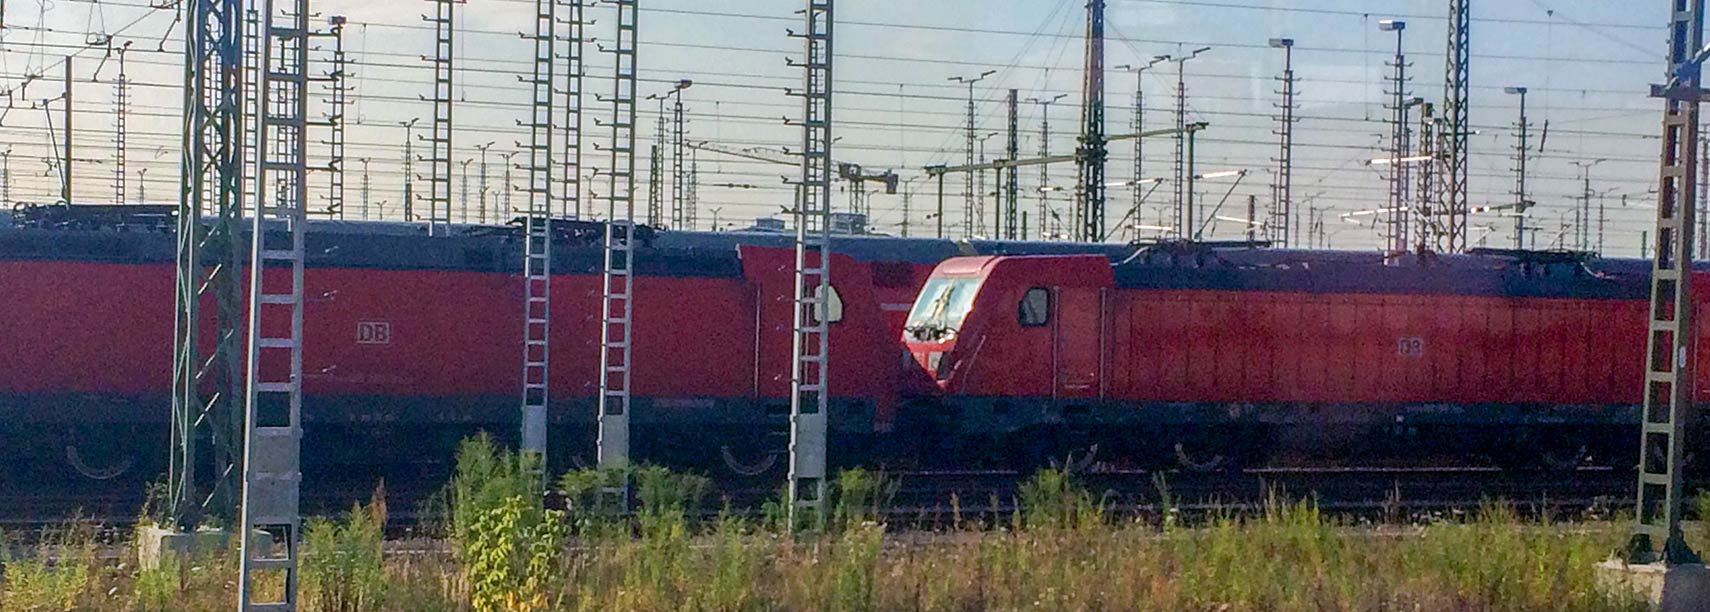 DB locomotives Halle an der Saale